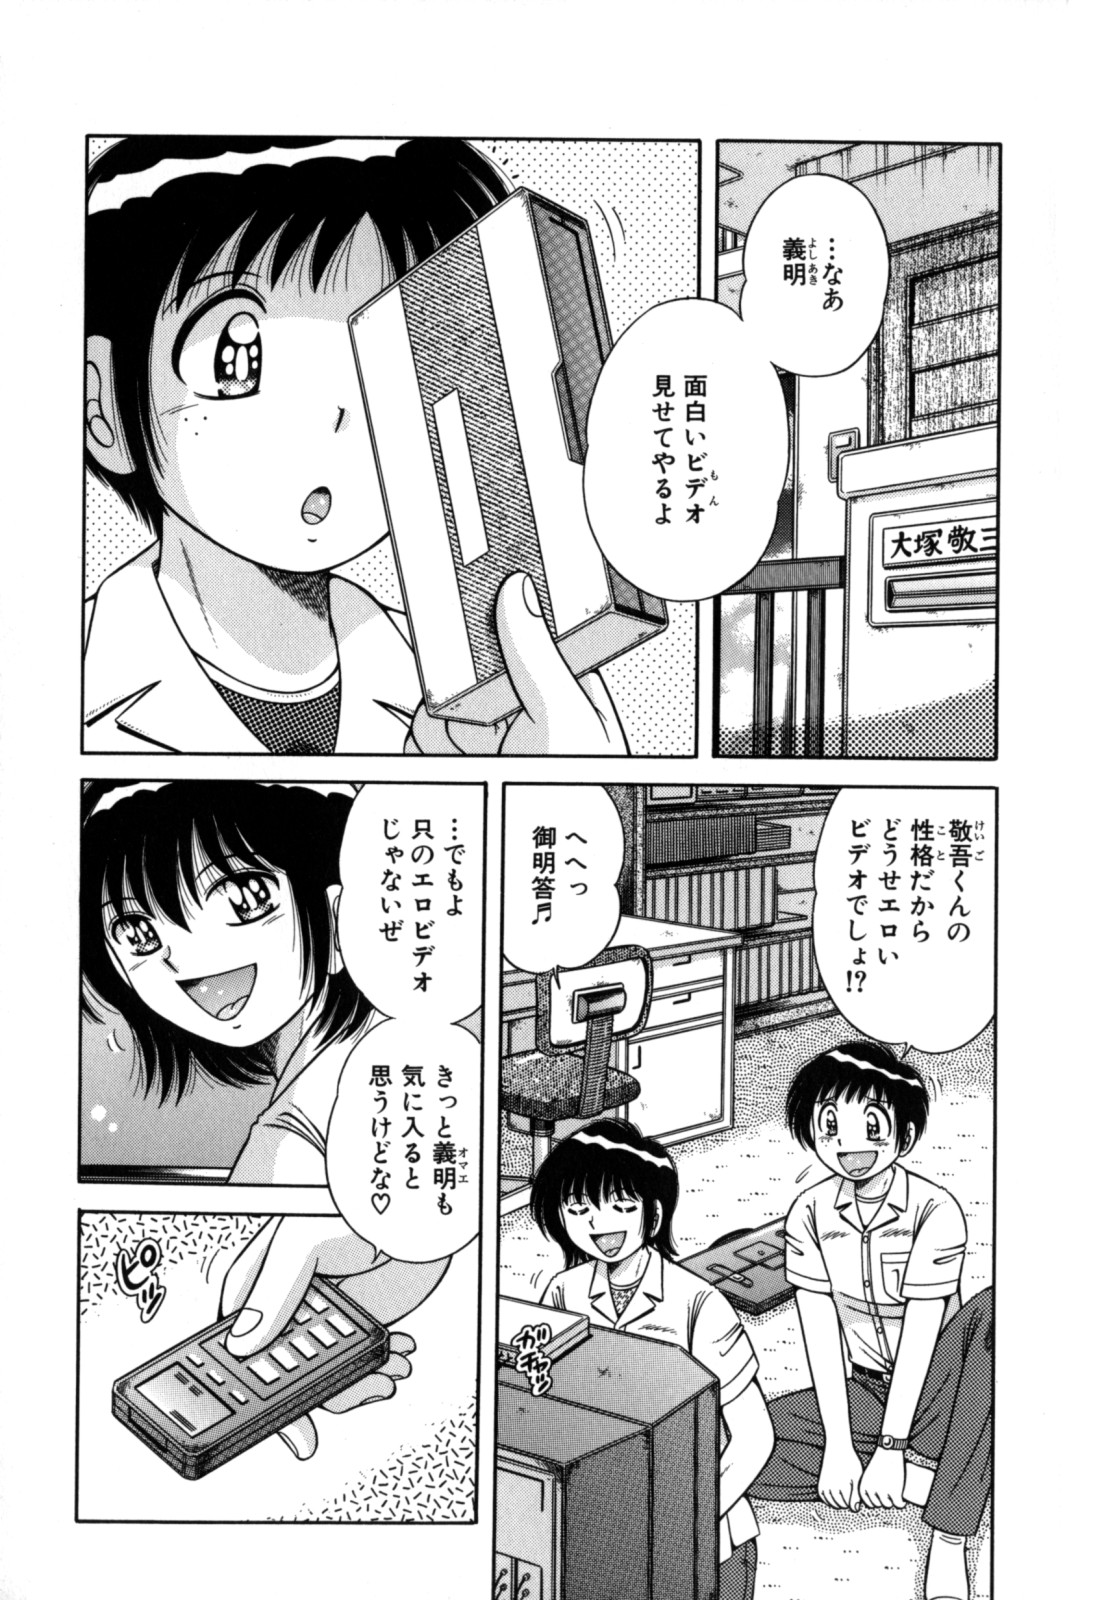 [Umino Sachi] R-18 page 7 full